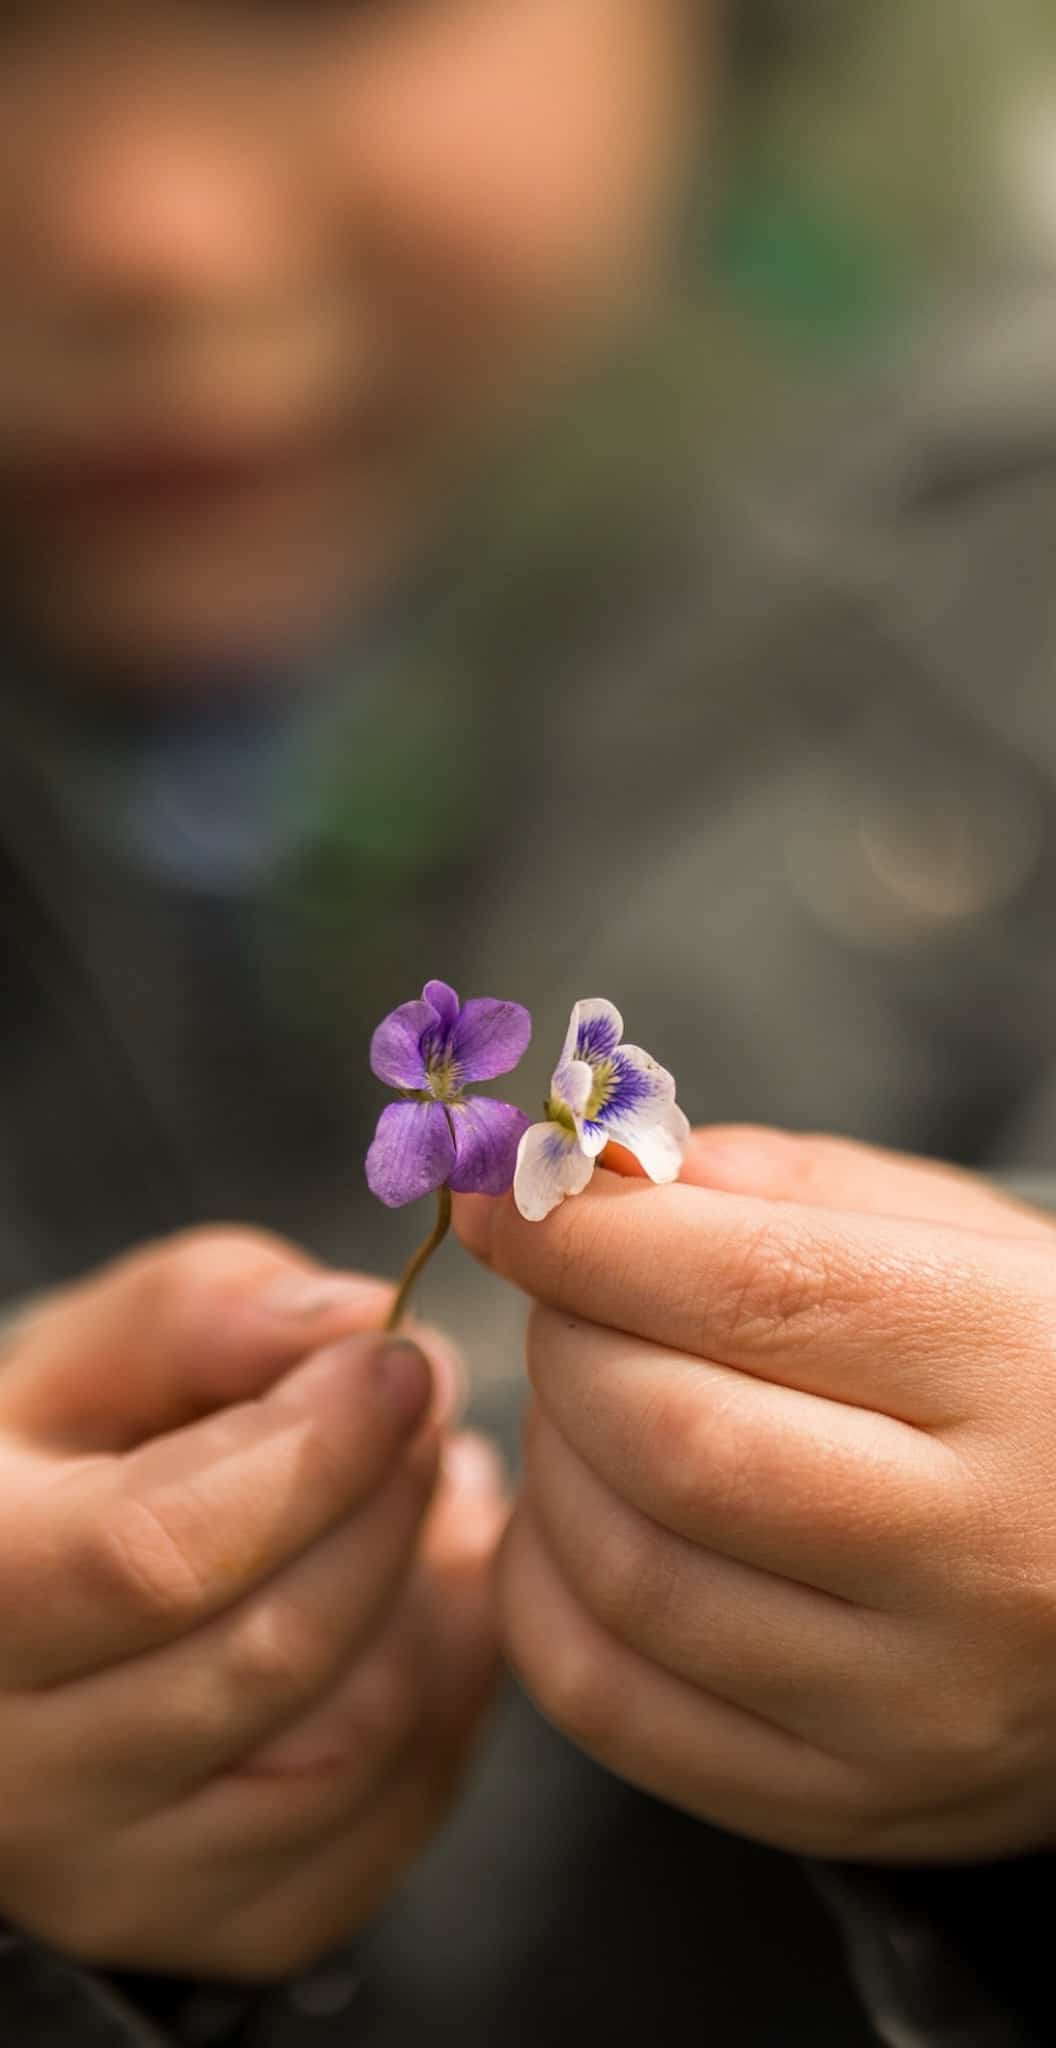 Child holding violets 